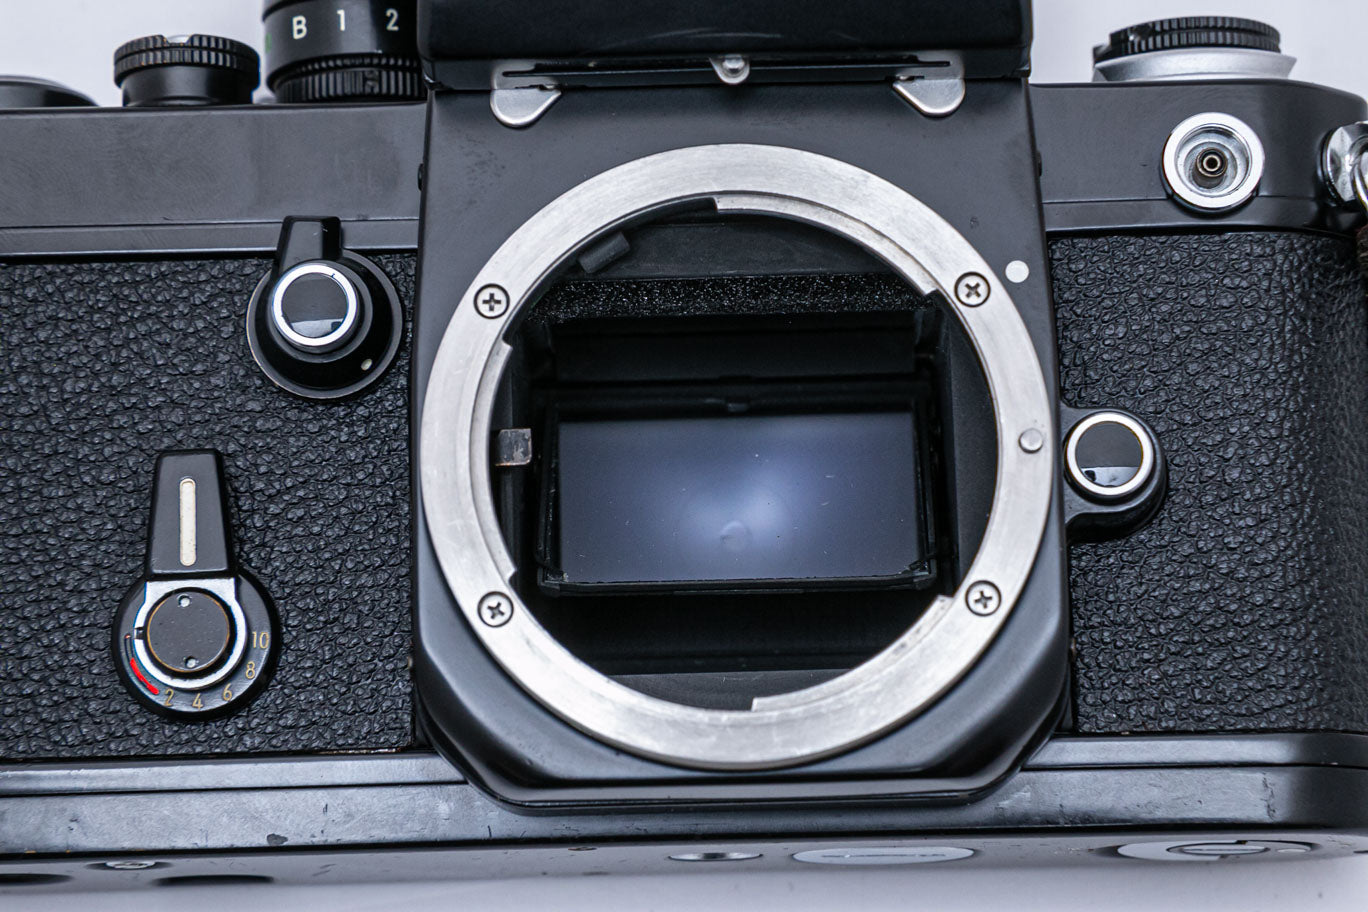 Nikon F2 フォトミック ブラック